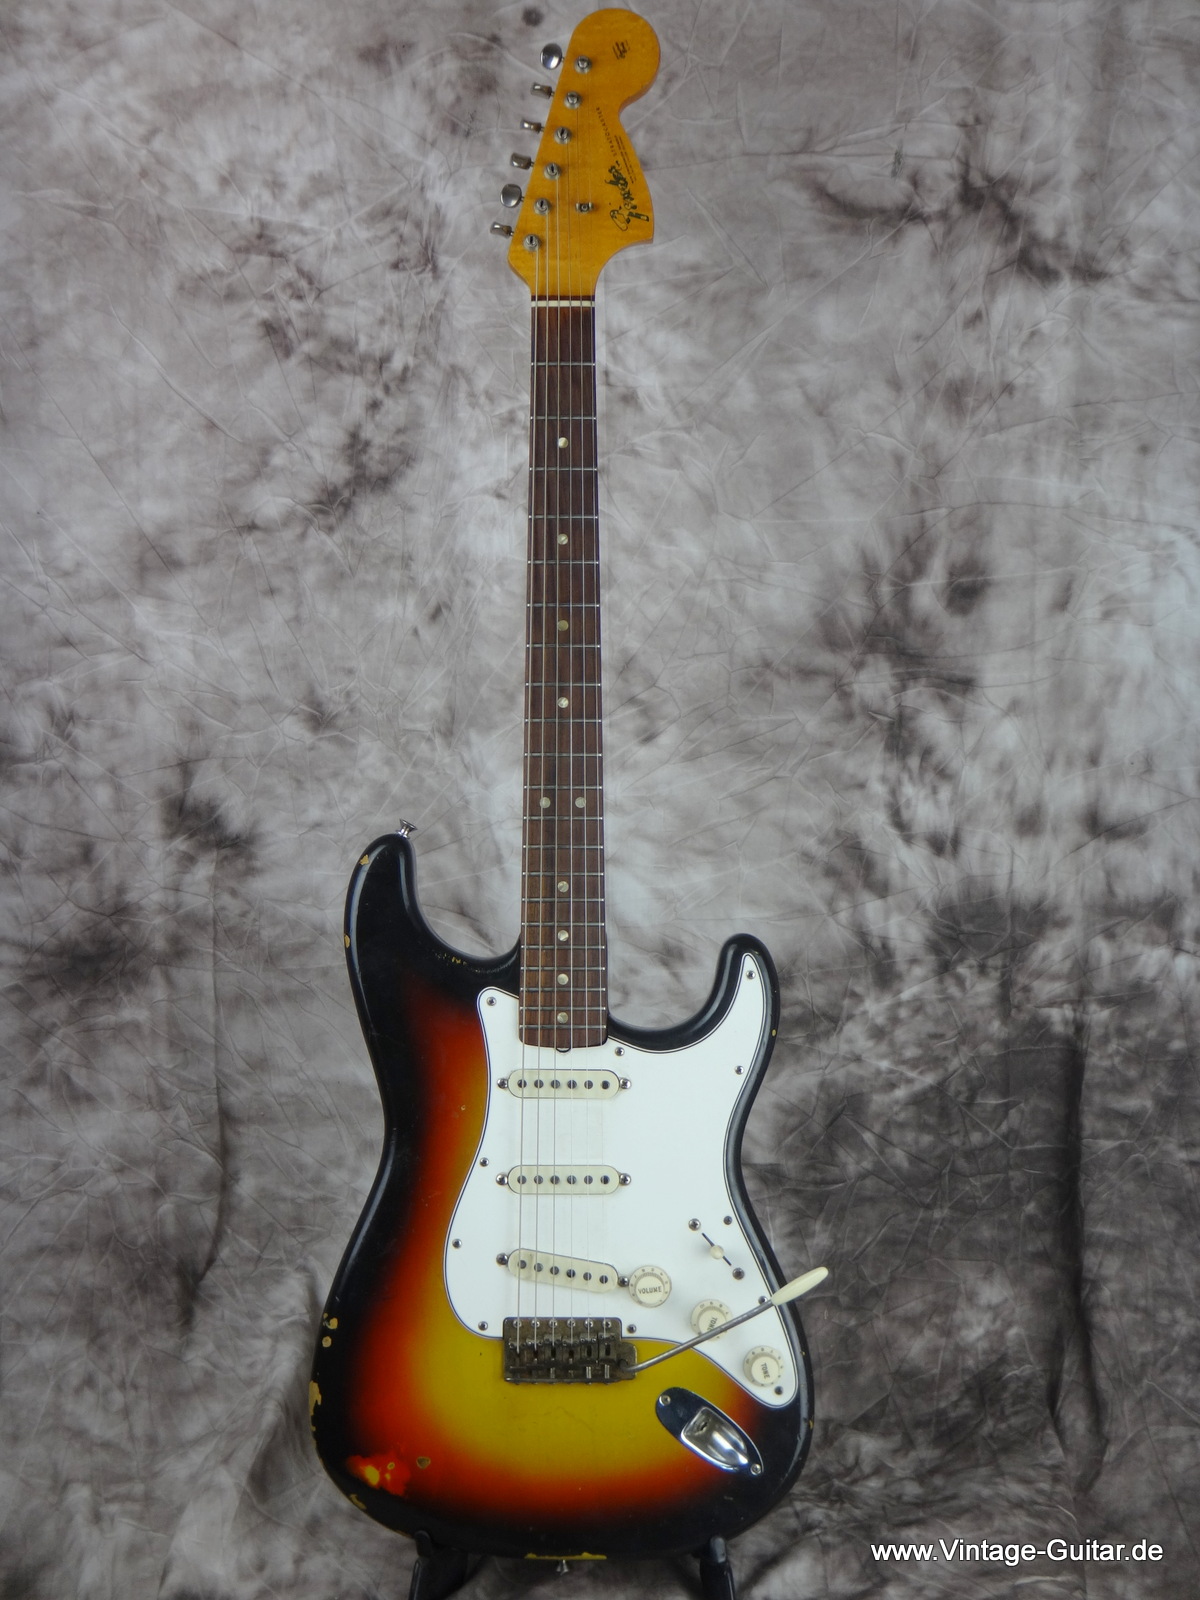 Fender_Stratocaster_1966_sunburst-black-bobbin-pickups-001.JPG